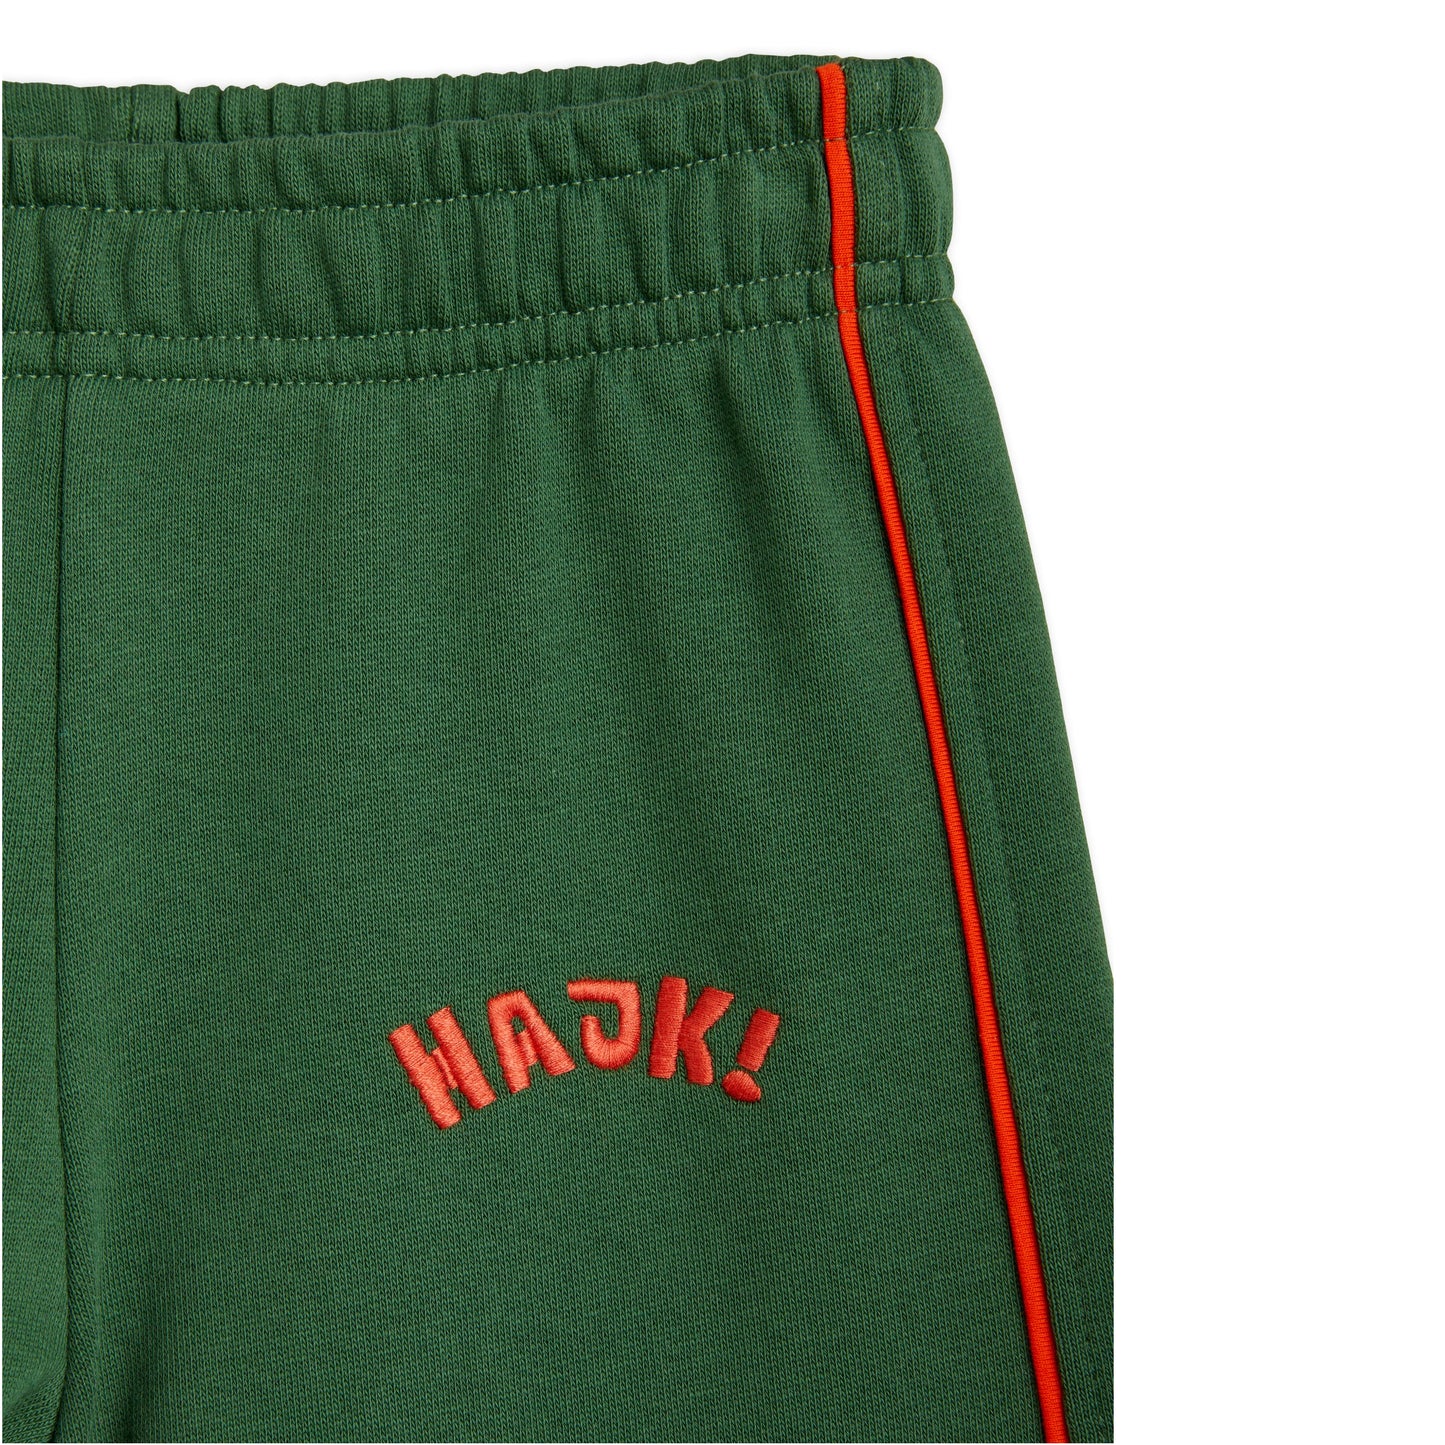 MINI RODINI Hike Embroidered Sweatpants ALWAYS SHOW